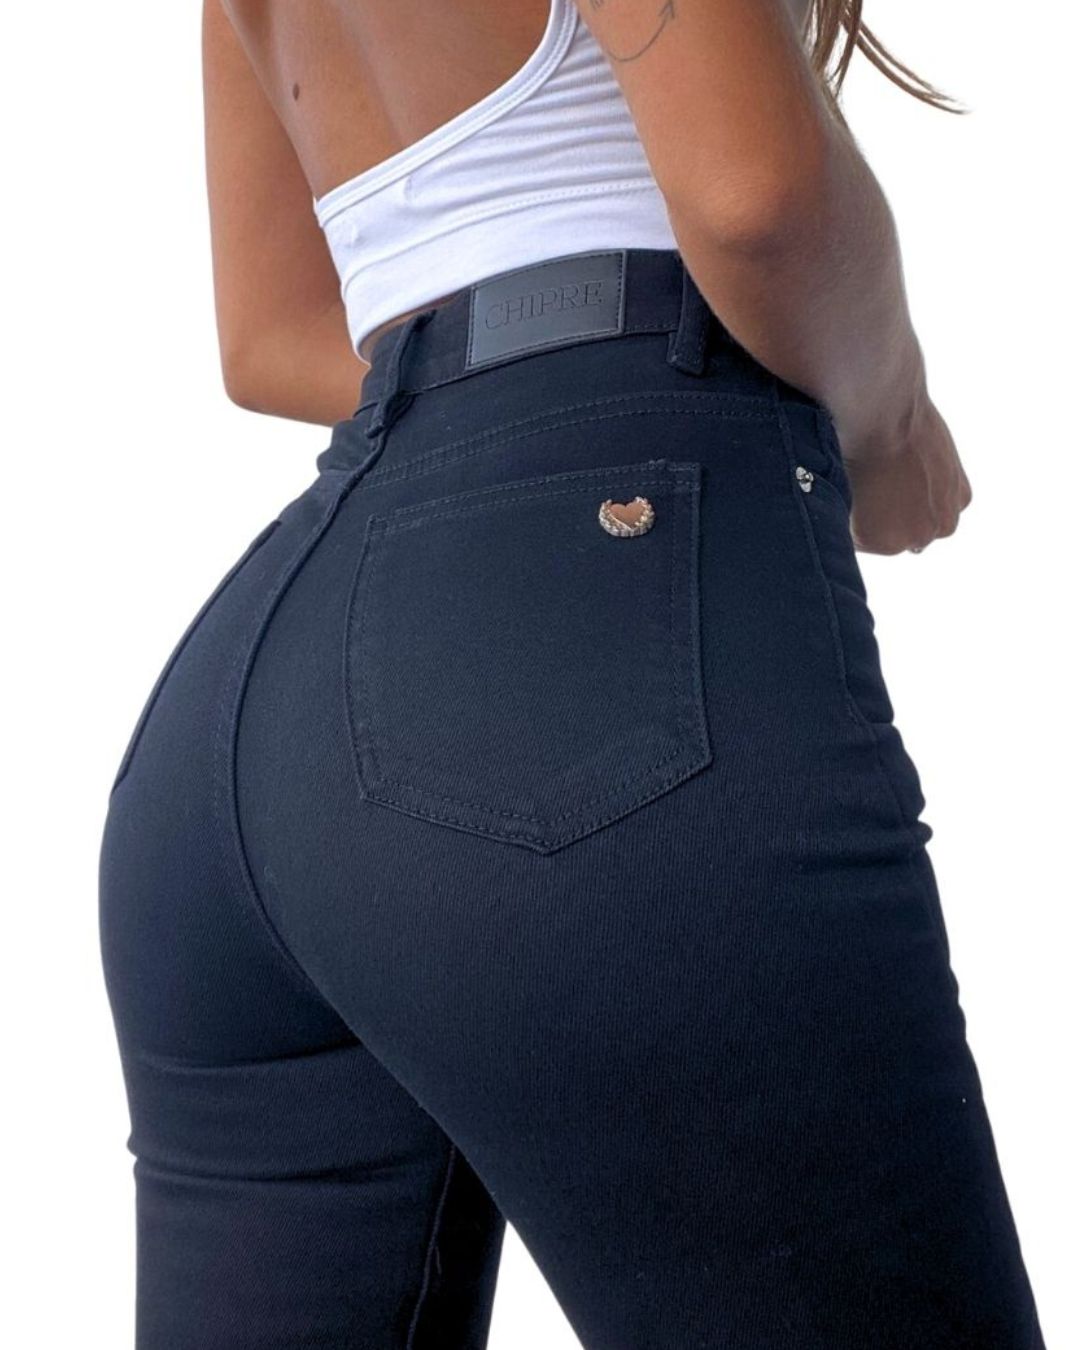 Kayros High-Rise Skinny Jean #FlatteringFit – Chipre Basic Denim